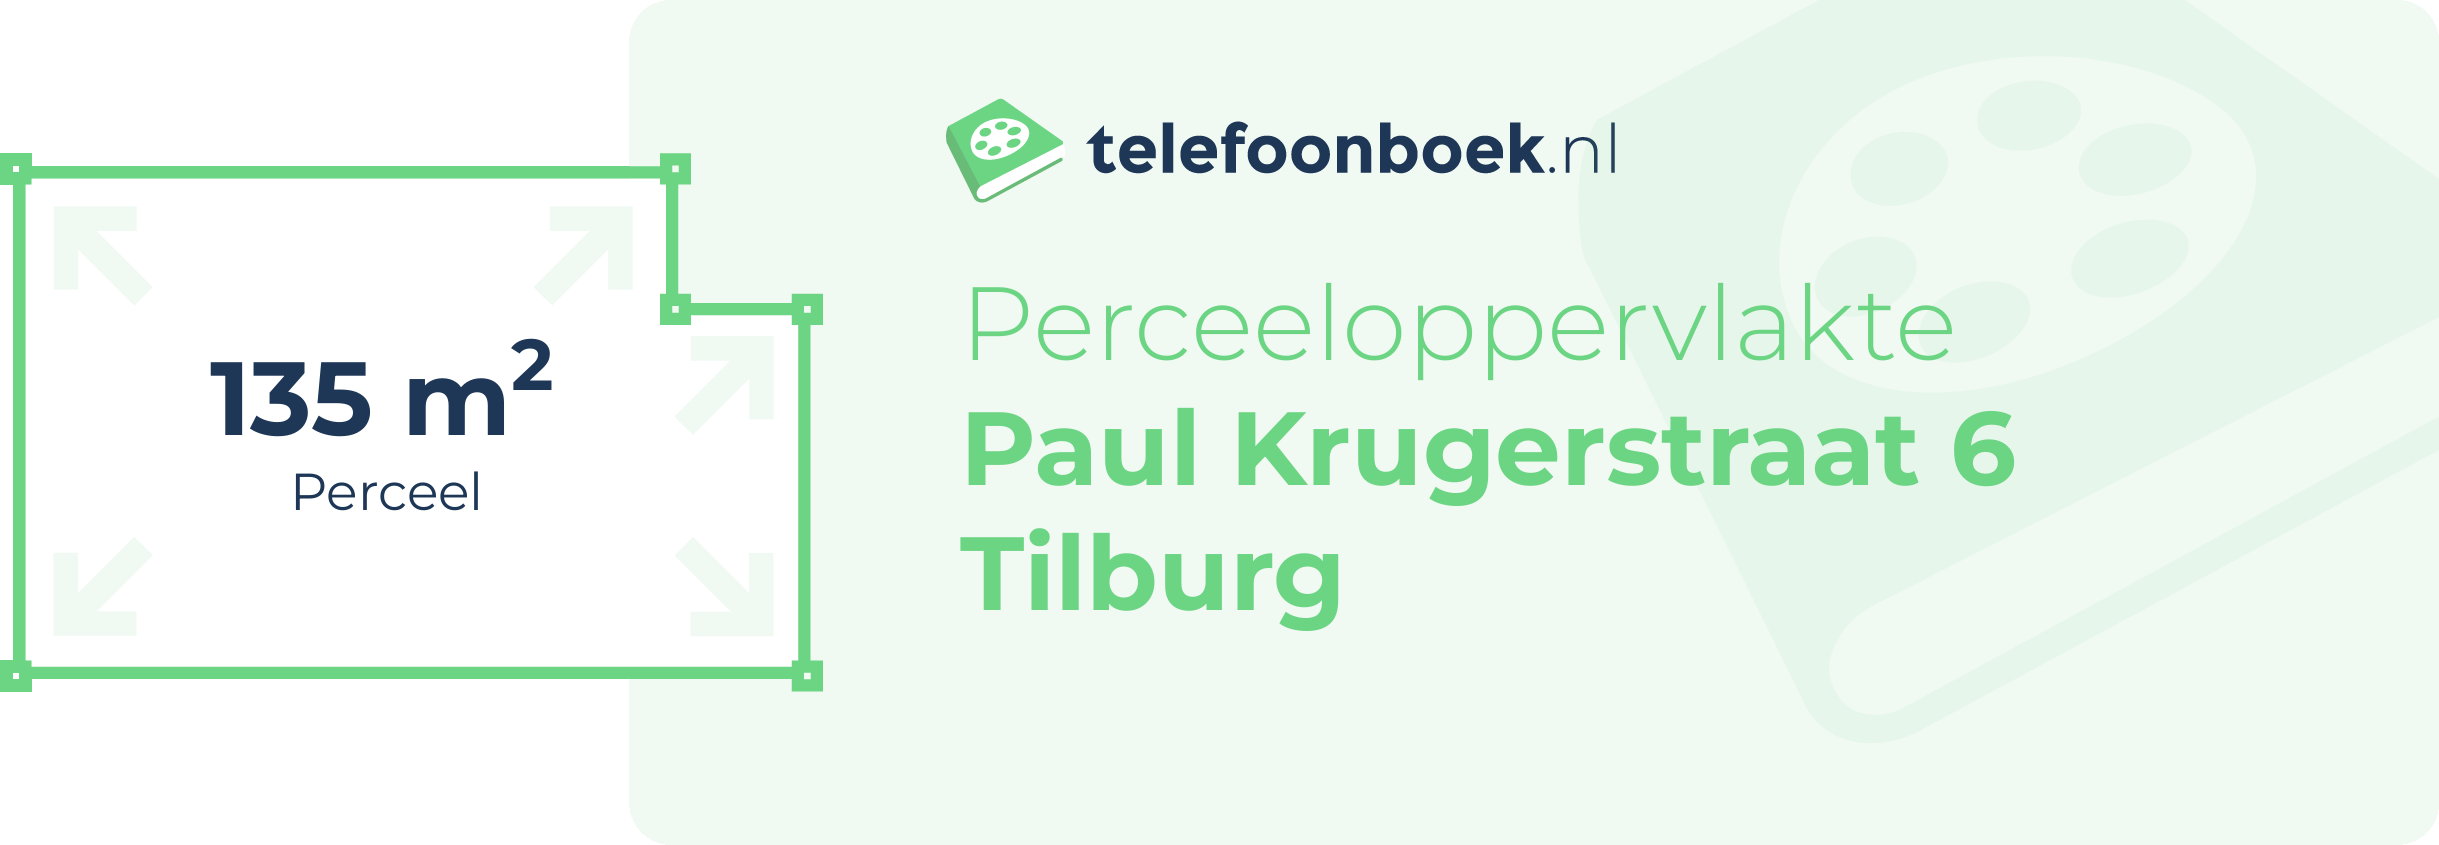 Perceeloppervlakte Paul Krugerstraat 6 Tilburg